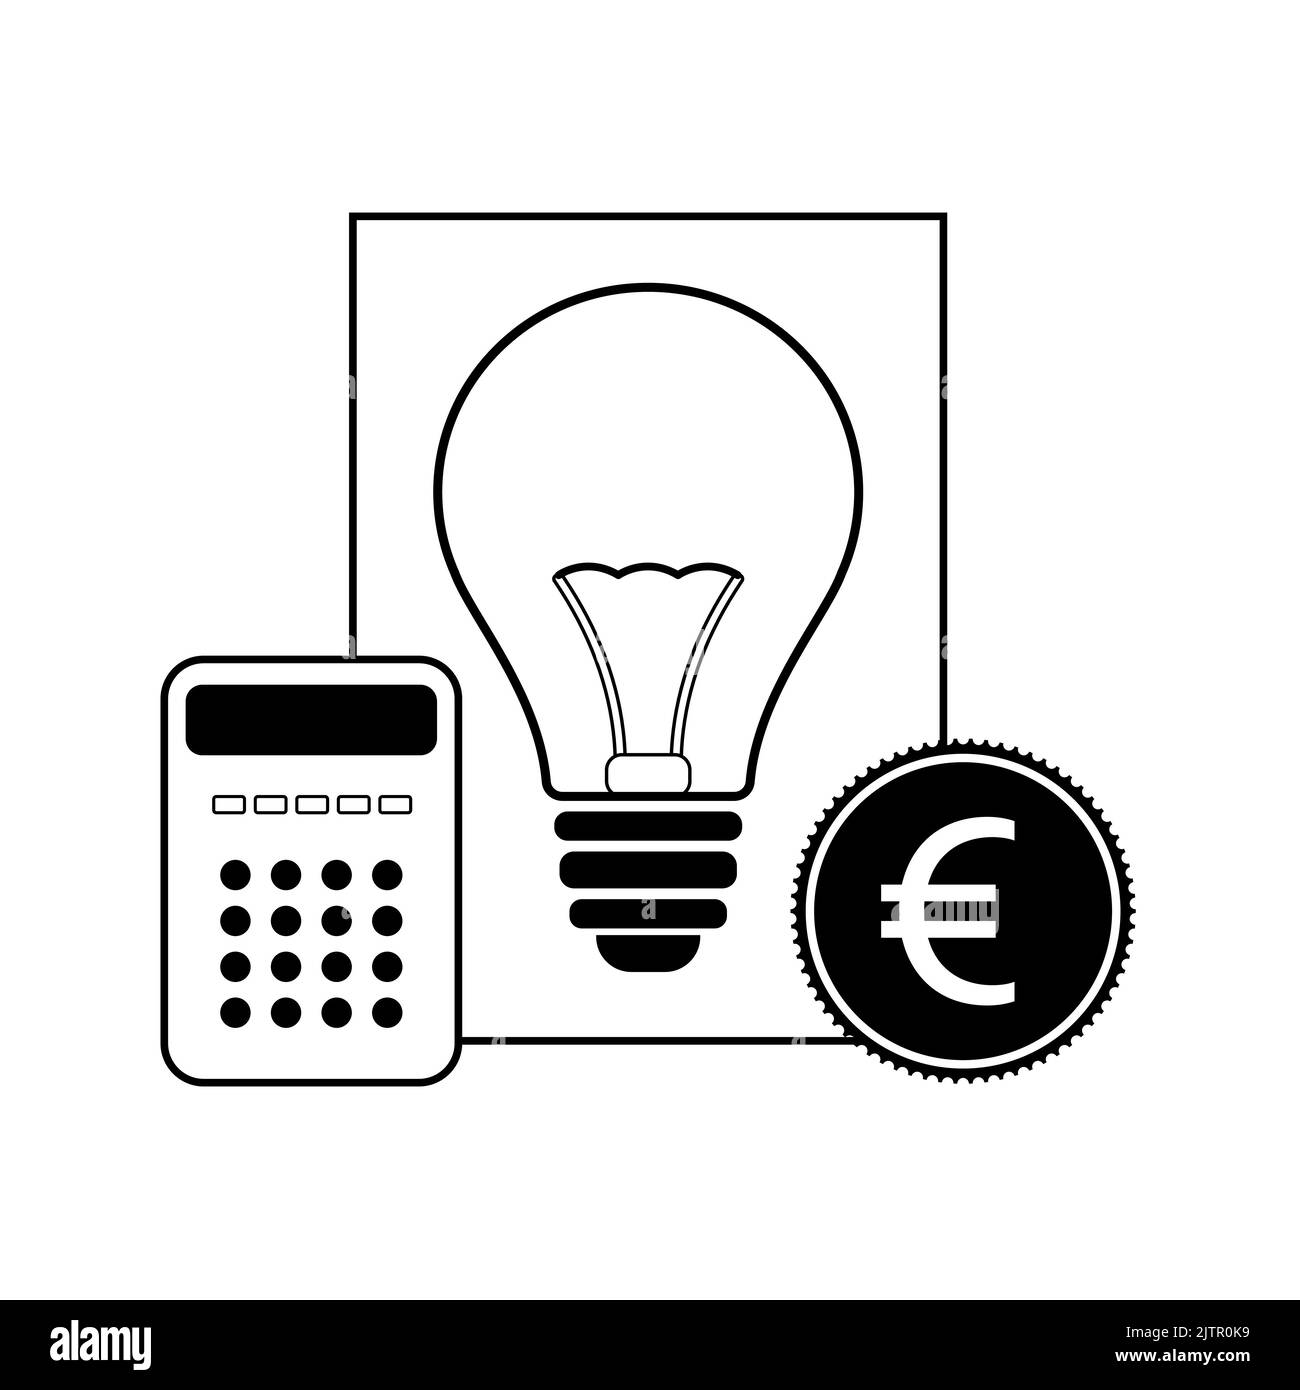 Energiepreiskonzept. Symbol für Rechnung, Glühbirne, Euro-Münze und Taschenrechner. Flache Vektorgrafik Stock Vektor